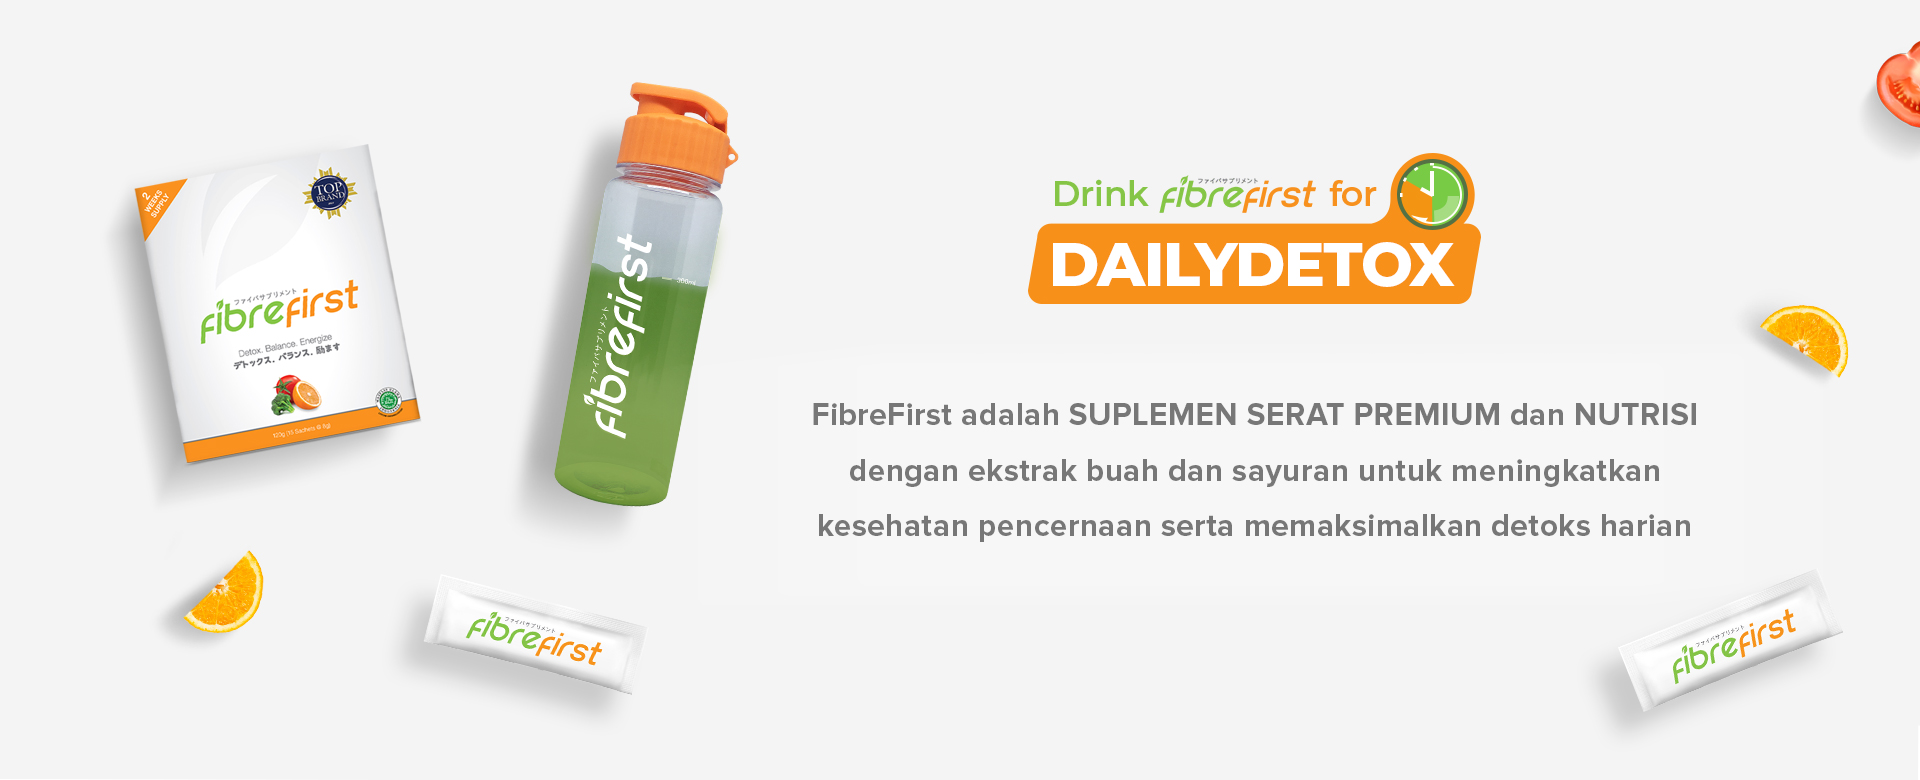 FibreFirst adalah SUPLEMEN SERAT PREMIUM dan Nutrisi dengan ekstrak buah dan sayuran untuk meningkatkan kesehatan pencernaan serta memaksimalkan detoks harian